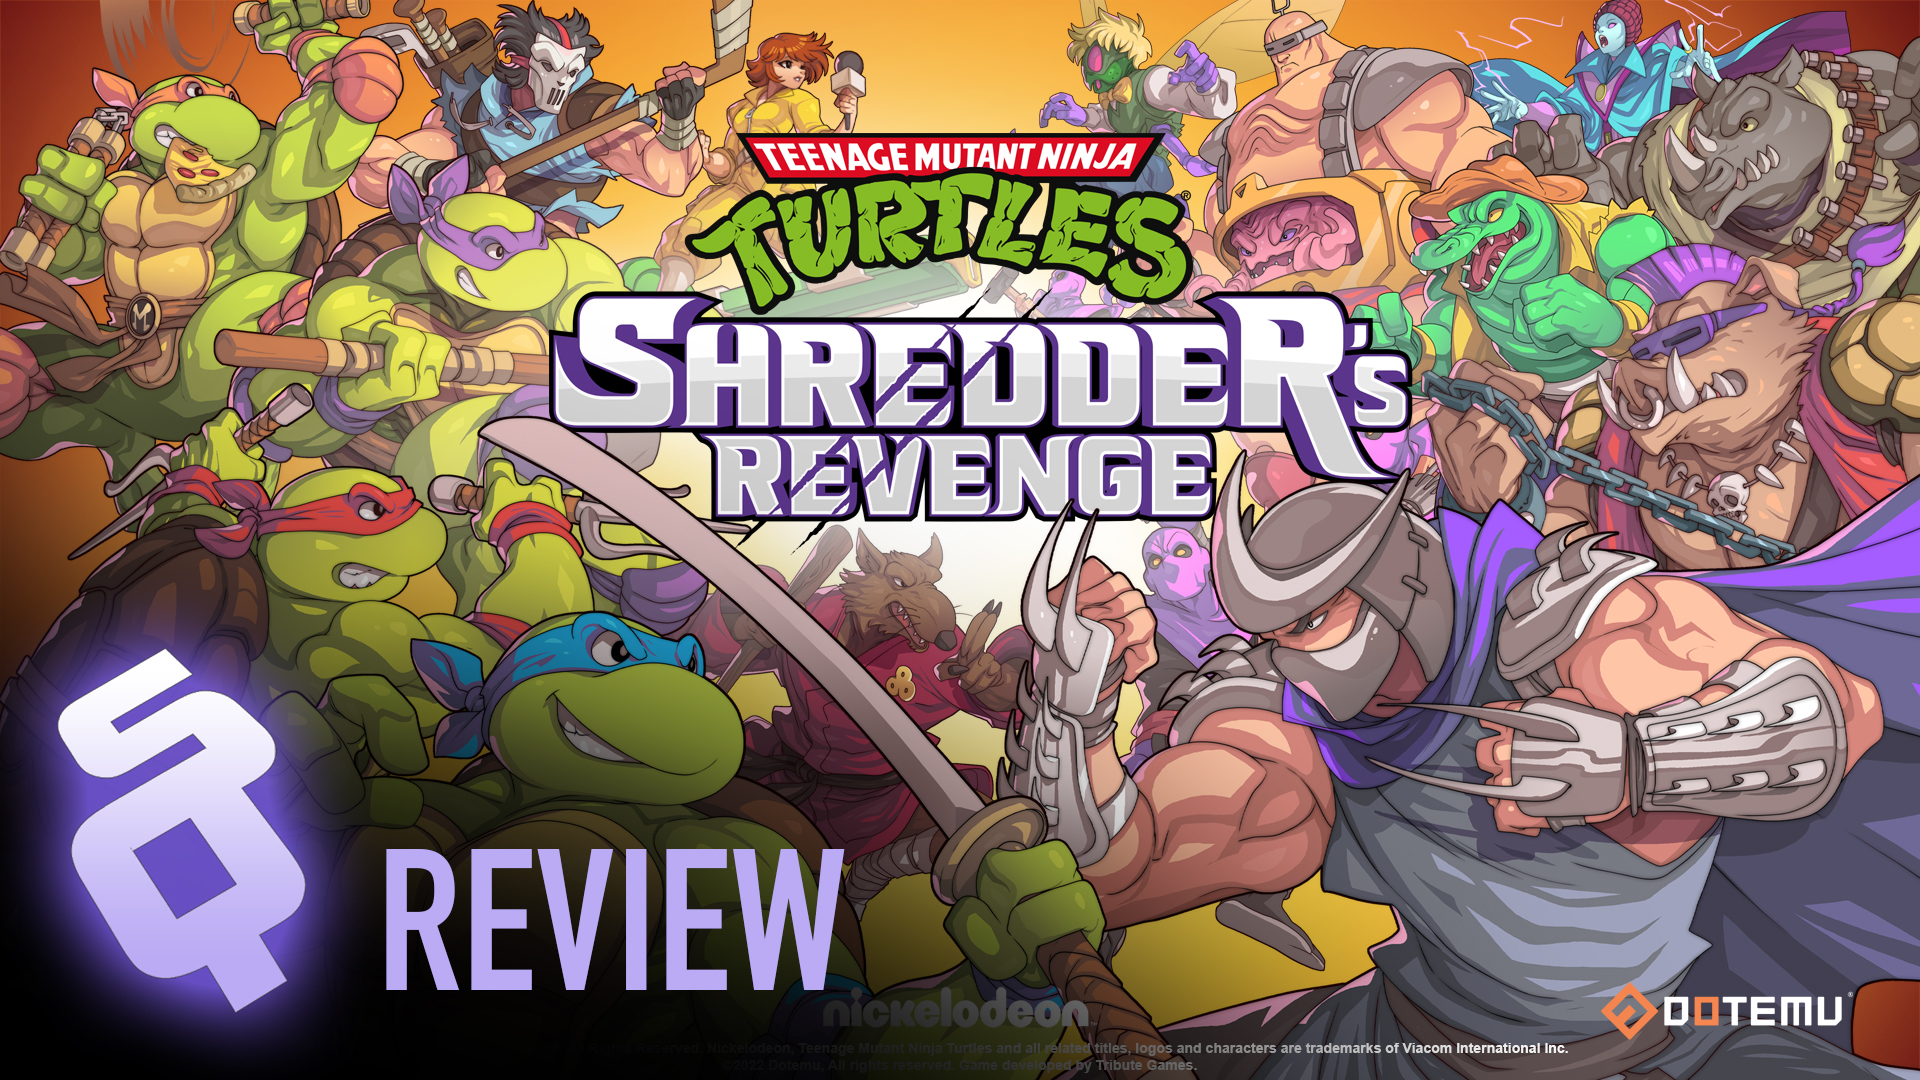 https://www.sidequesting.com/wp-content/uploads/review-shredders-revenge.jpg